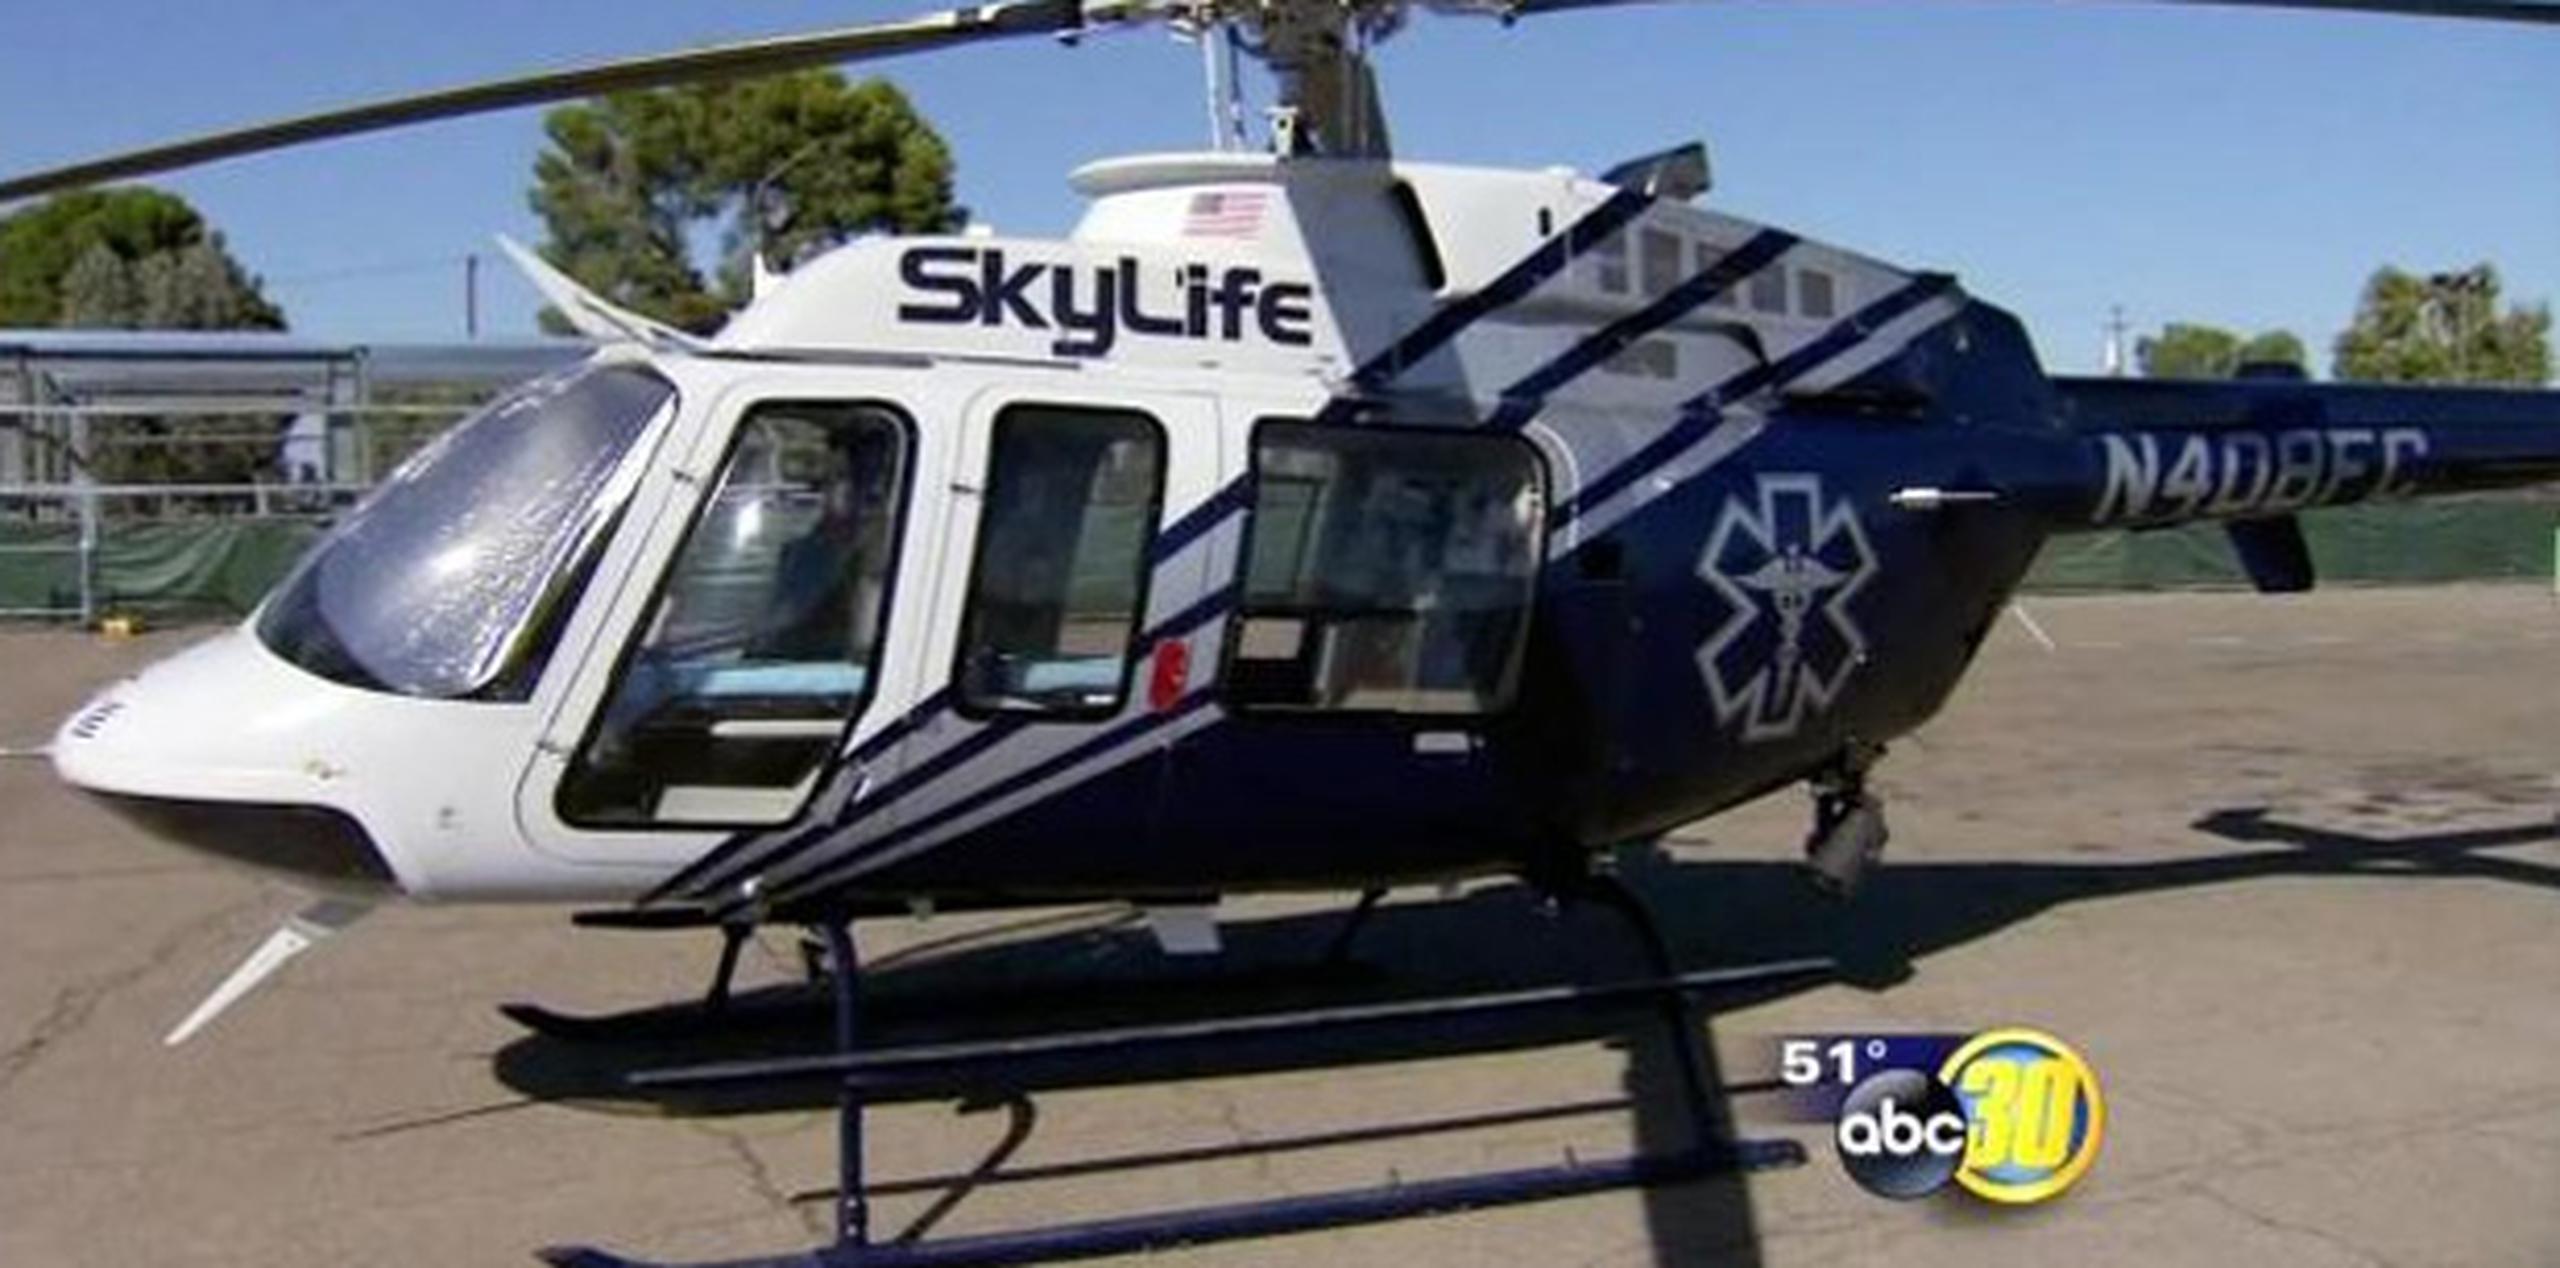 A bordo de la ambulancia aérea SkyLife viajaban un piloto, una enfermera, un paramédico y un paciente, indicó en una rueda de prensa el director general de American Ambulance Todd Valeri. (abc)